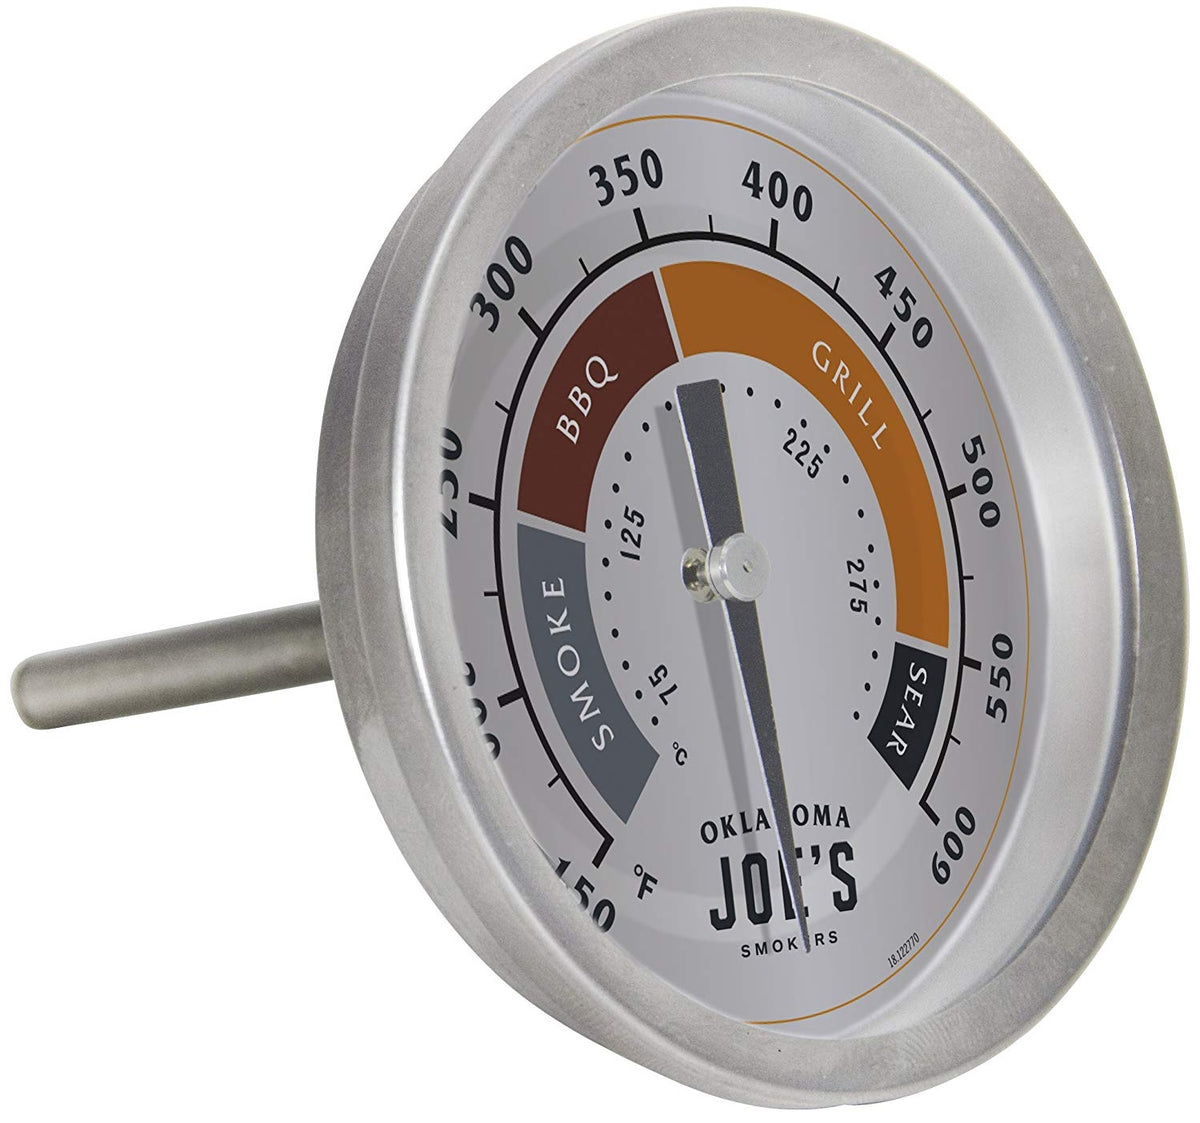 Oklahoma Joe's 3595528R06 Smoker Thermometer Gauge, Silver – Toolbox Supply